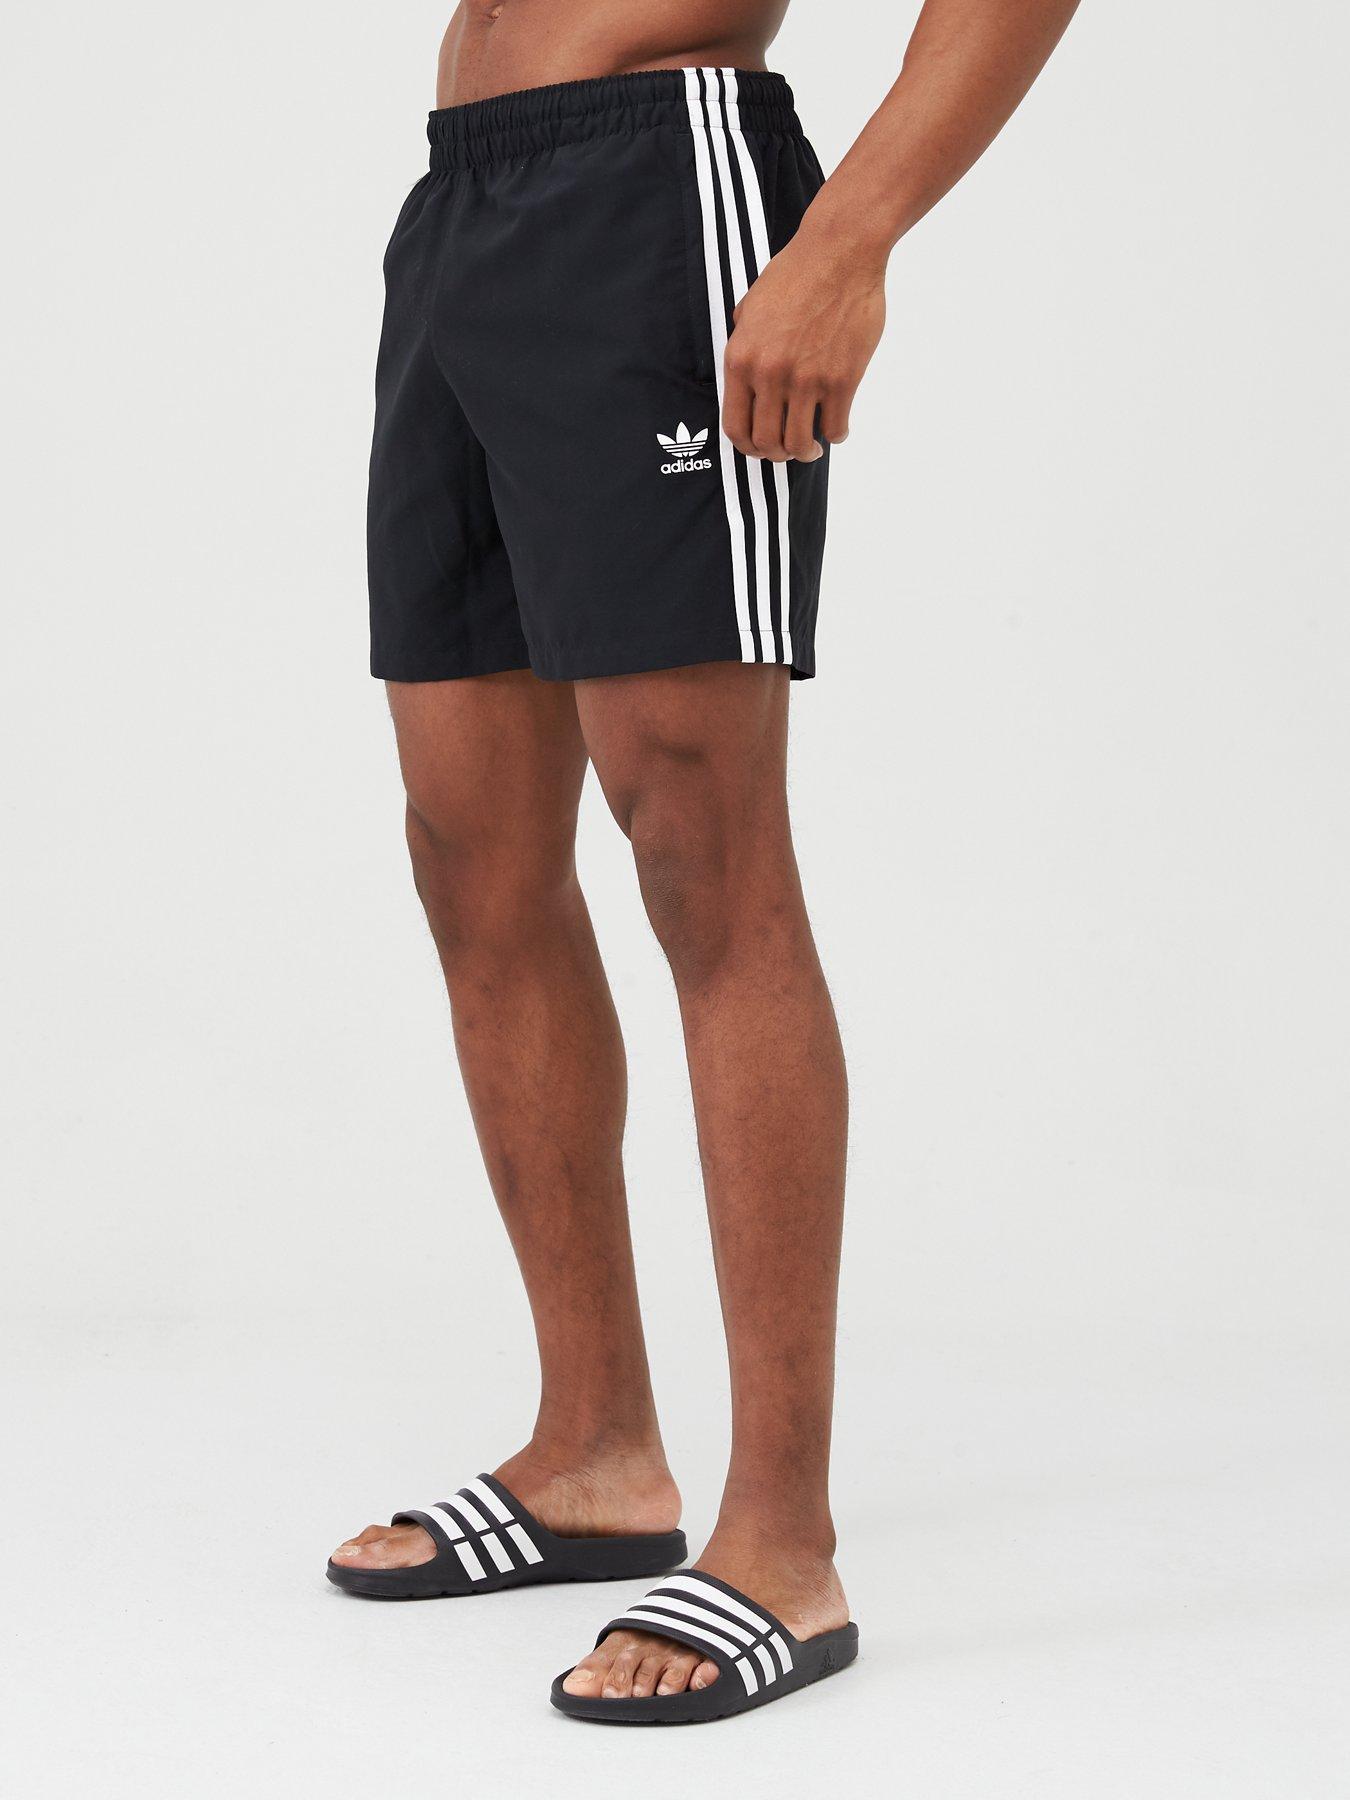 adidas 3 stripes water shorts